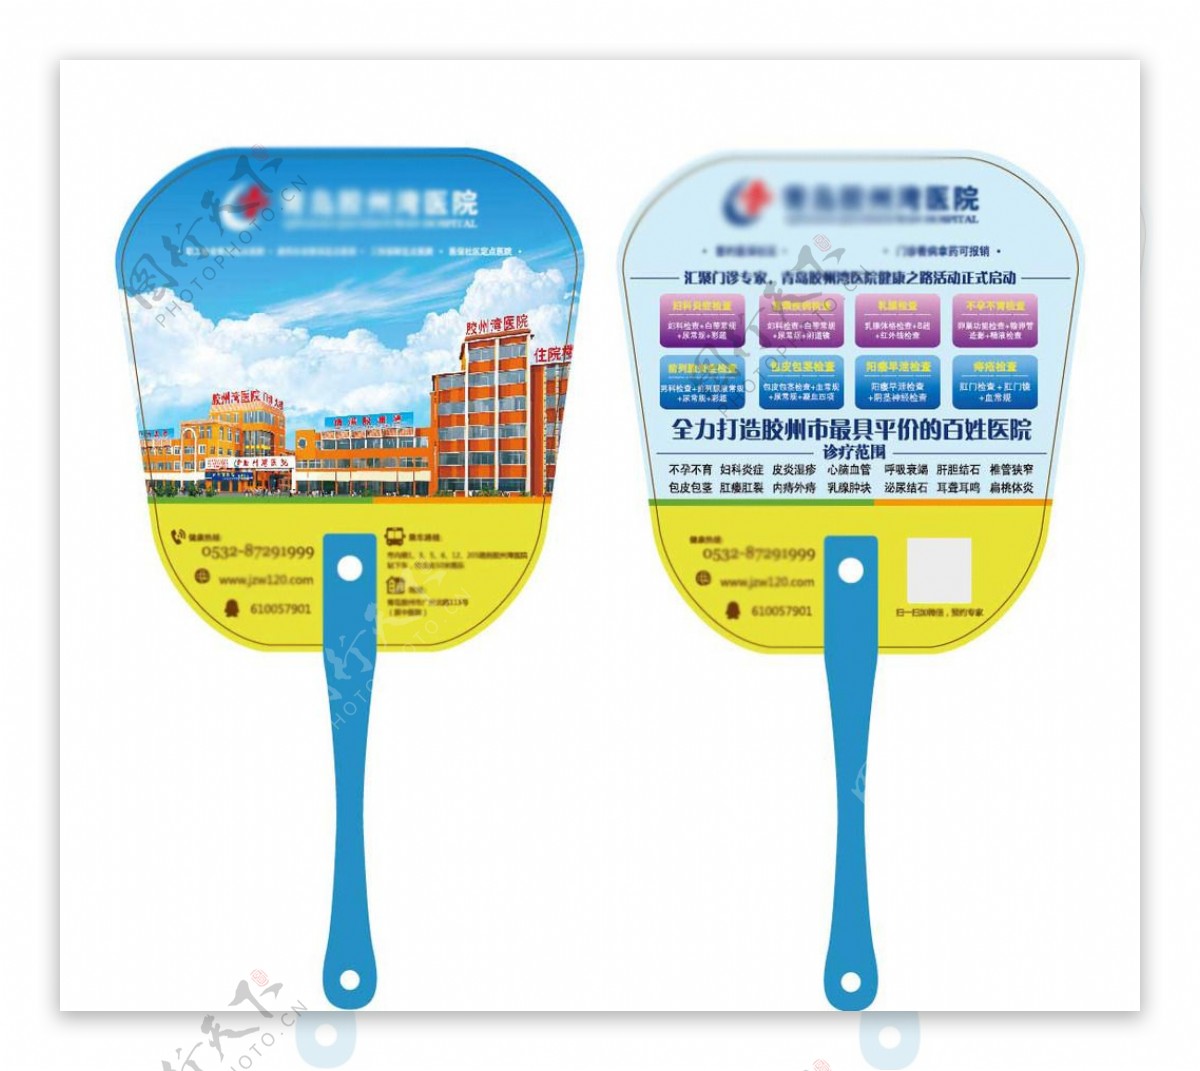 医院广告扇塑料圆扇的设计模板